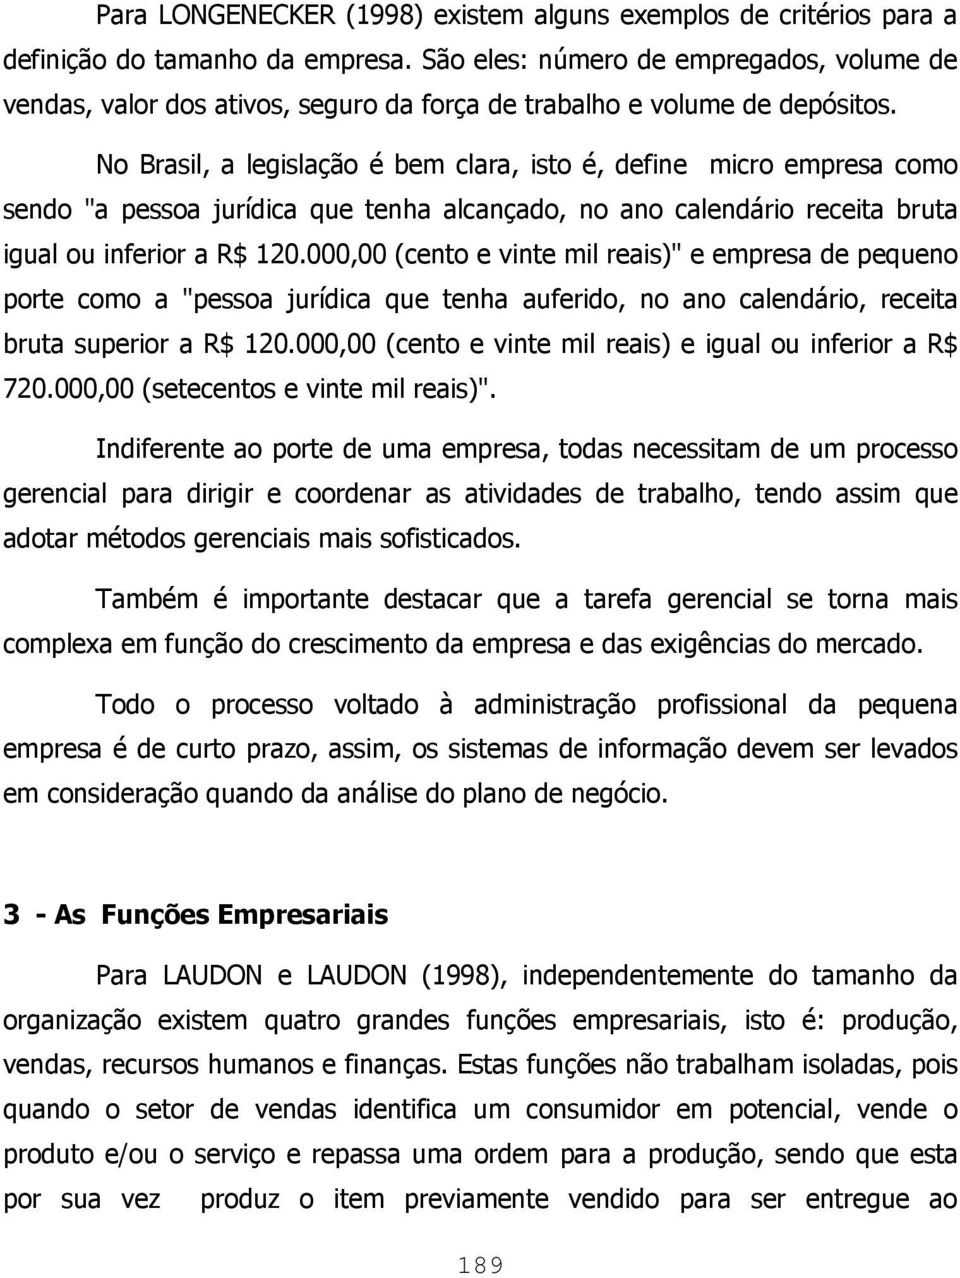 No Brasil, a legislação é bem clara, isto é, define micro empresa como sendo "a pessoa jurídica que tenha alcançado, no ano calendário receita bruta igual ou inferior a R$ 120.